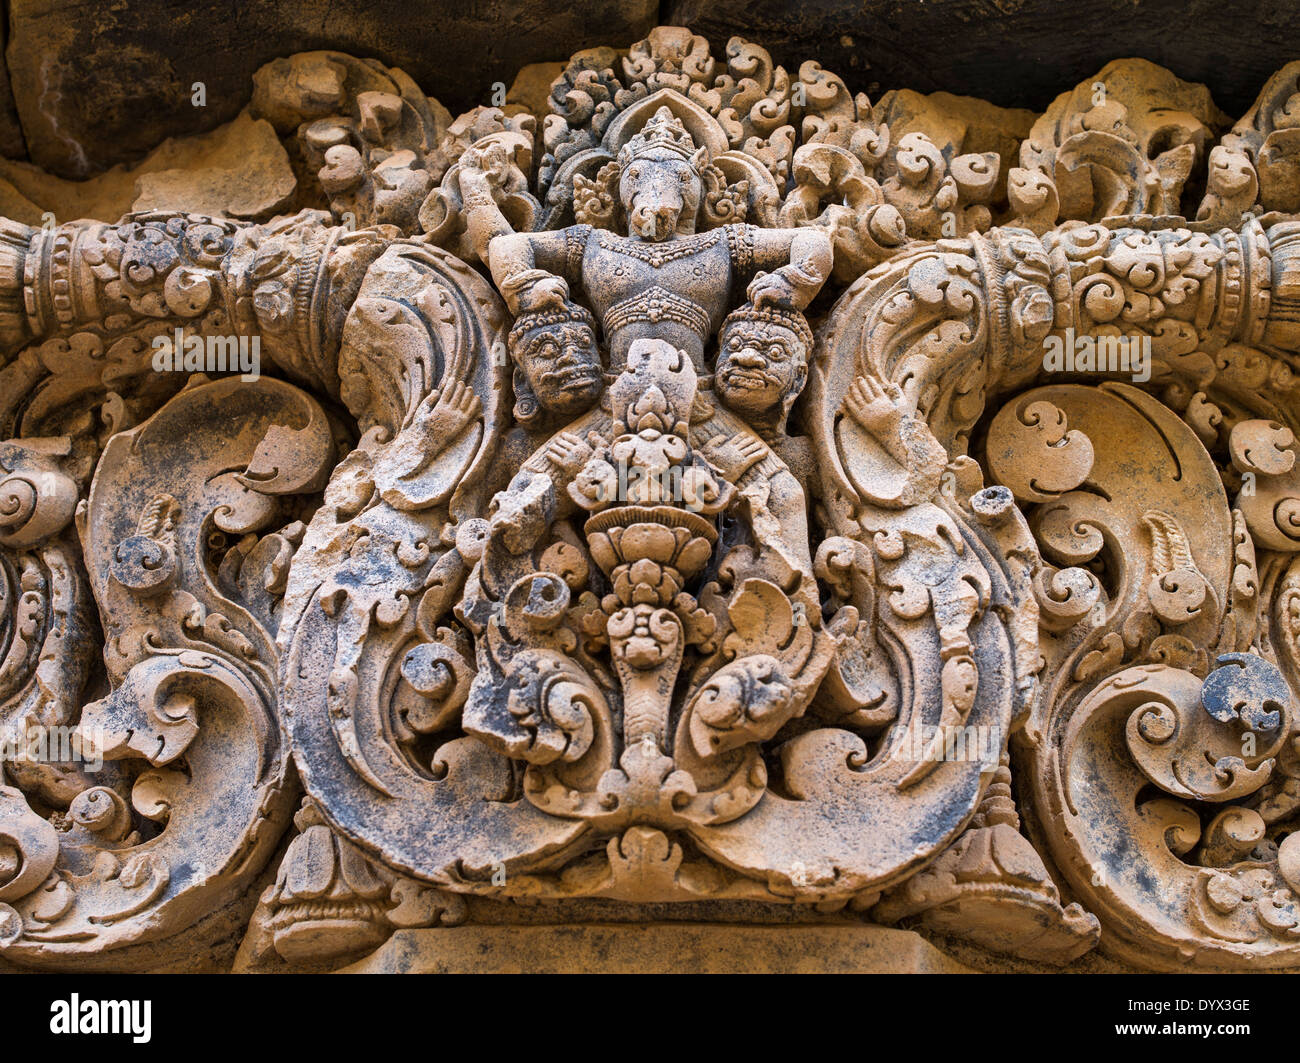 Tallados ornamentados en los dinteles de piedra arenisca sobre portadas de Banteay Srei un templo hindú dedicado a Shiva. En Siem Reap, Camboya Foto de stock